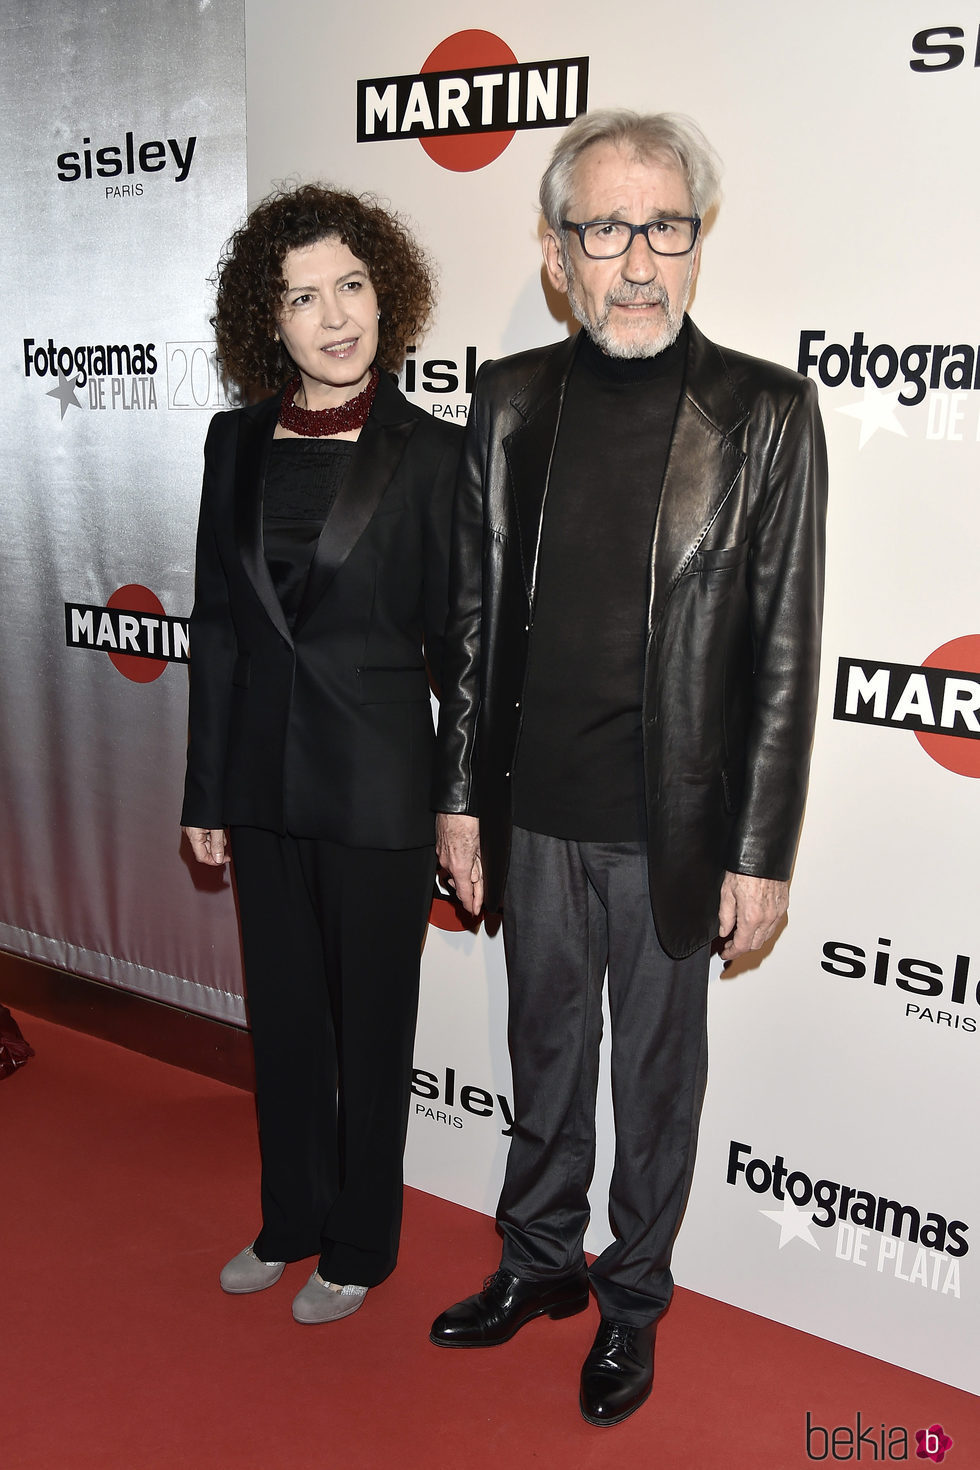 José Sacristán y Amparo Pascual en la alfombra roja de los Premios Fotogramas de Plata 2016